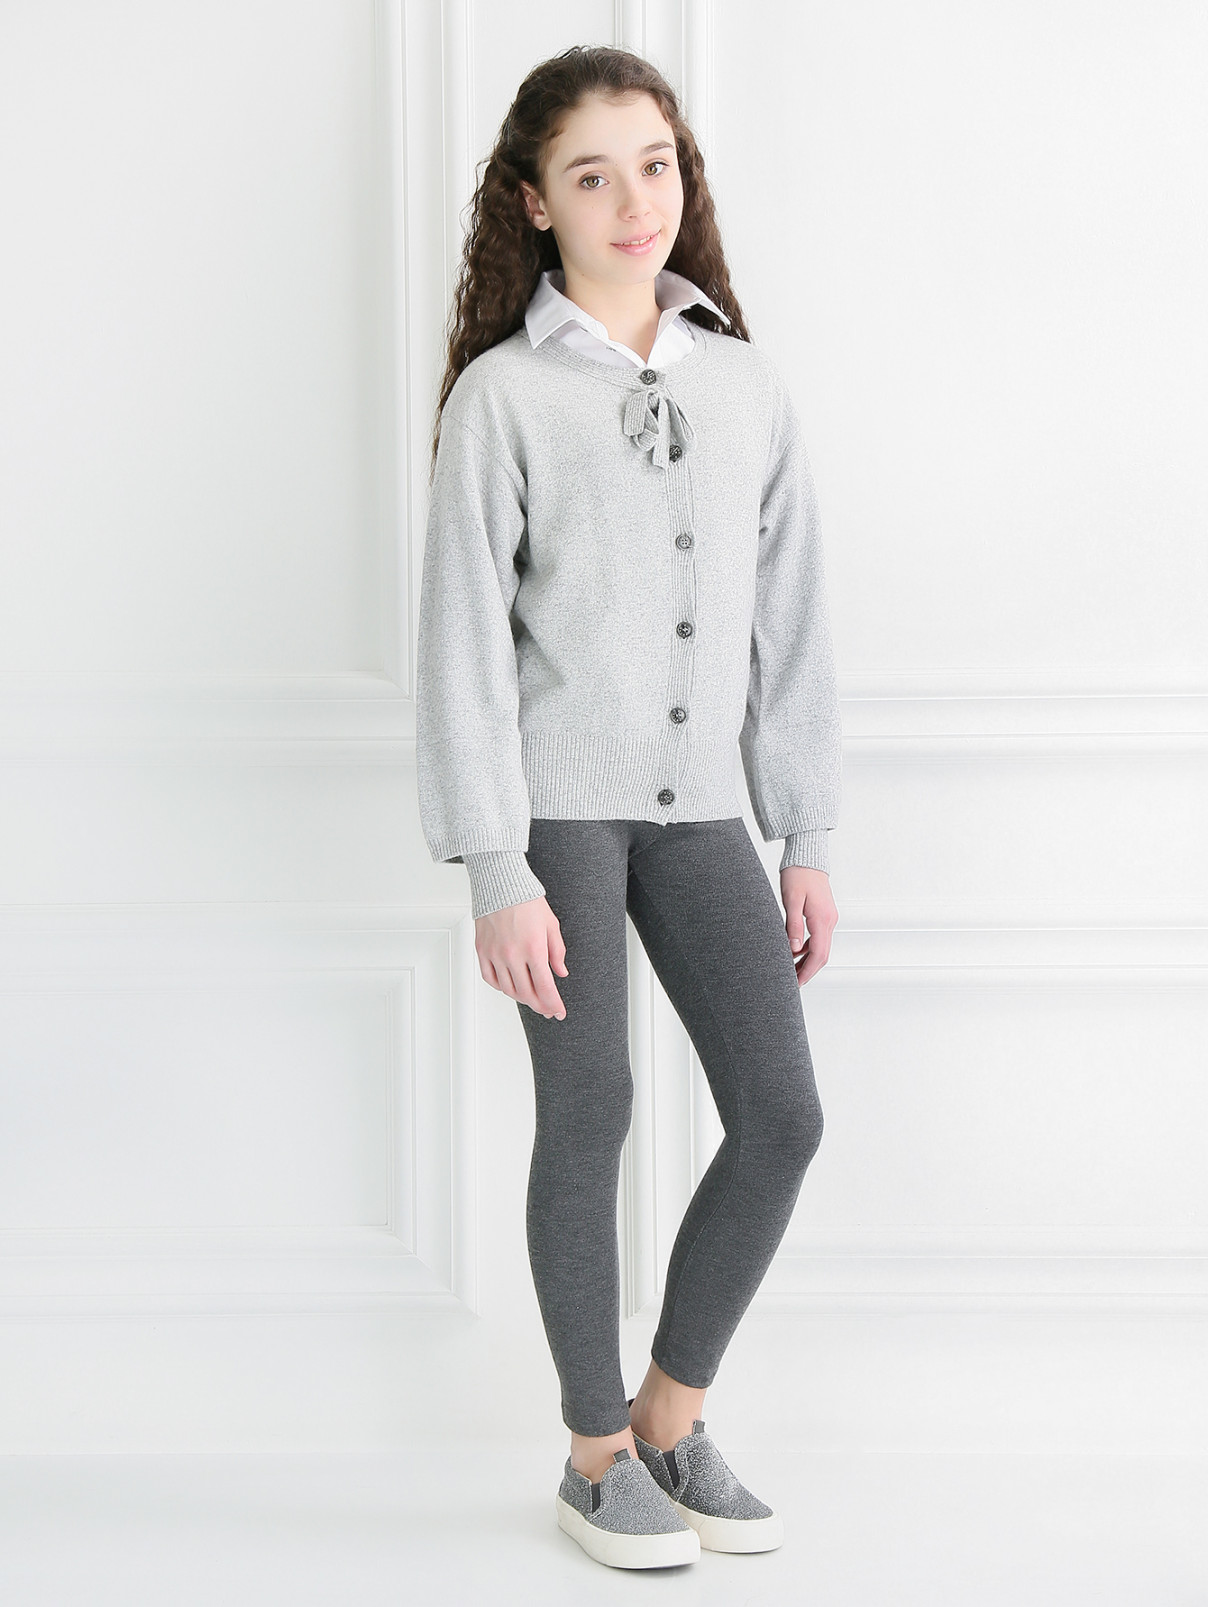 Трикотажные брюки на резинке Il Gufo  –  Модель Общий вид  – Цвет:  Серый